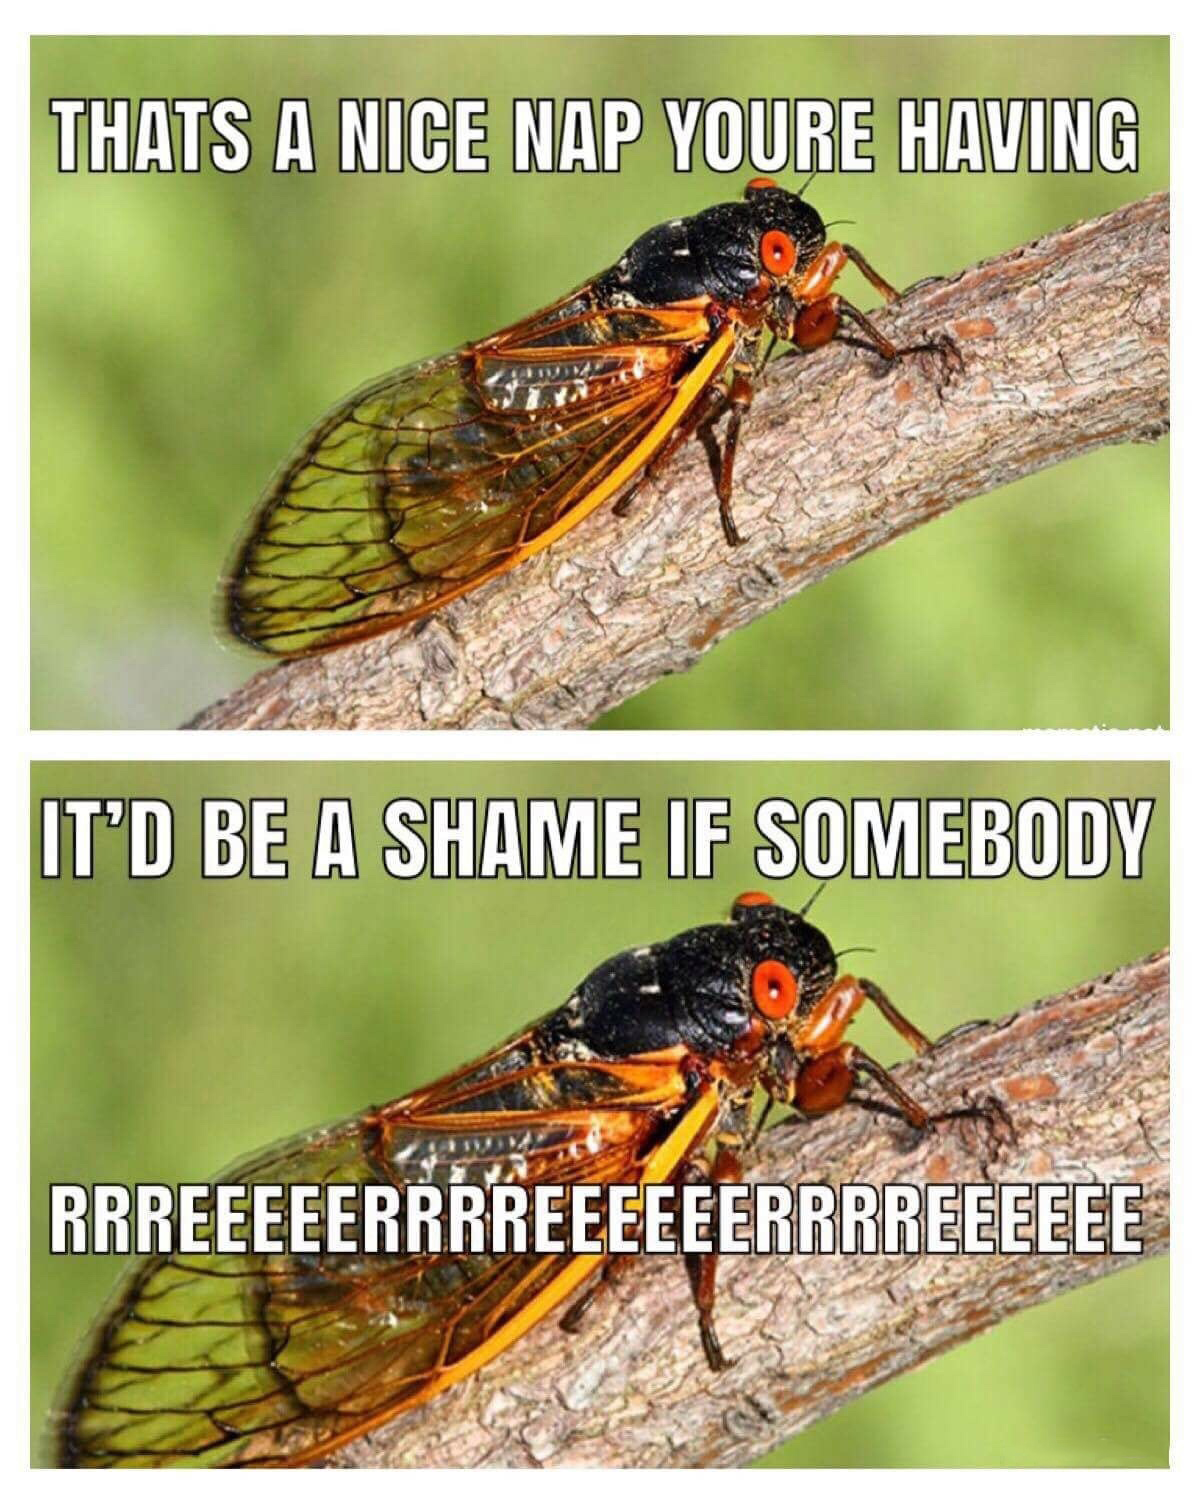 Reeeeeeee bug